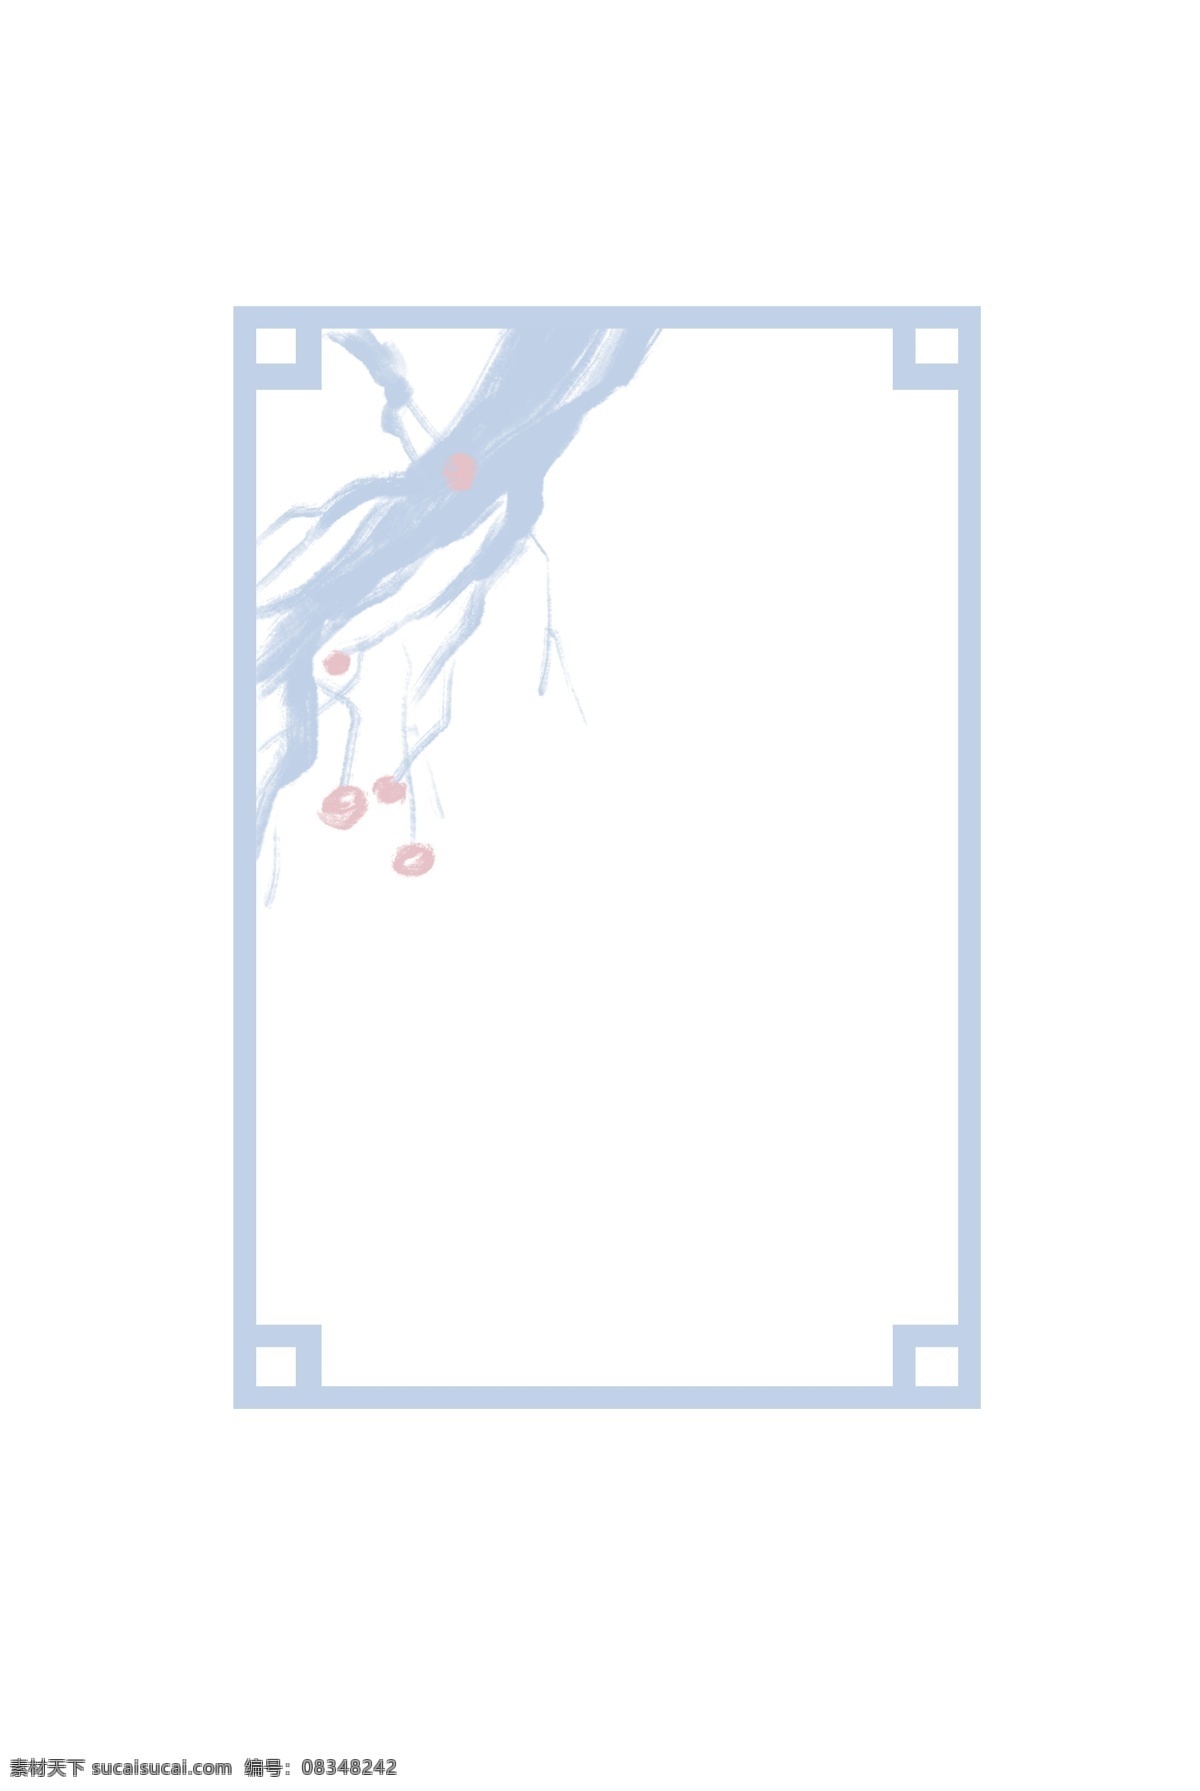 二十四节气 立冬 元素 简约 边框 冬天 树枝 蓝色 扁平化 有趣的